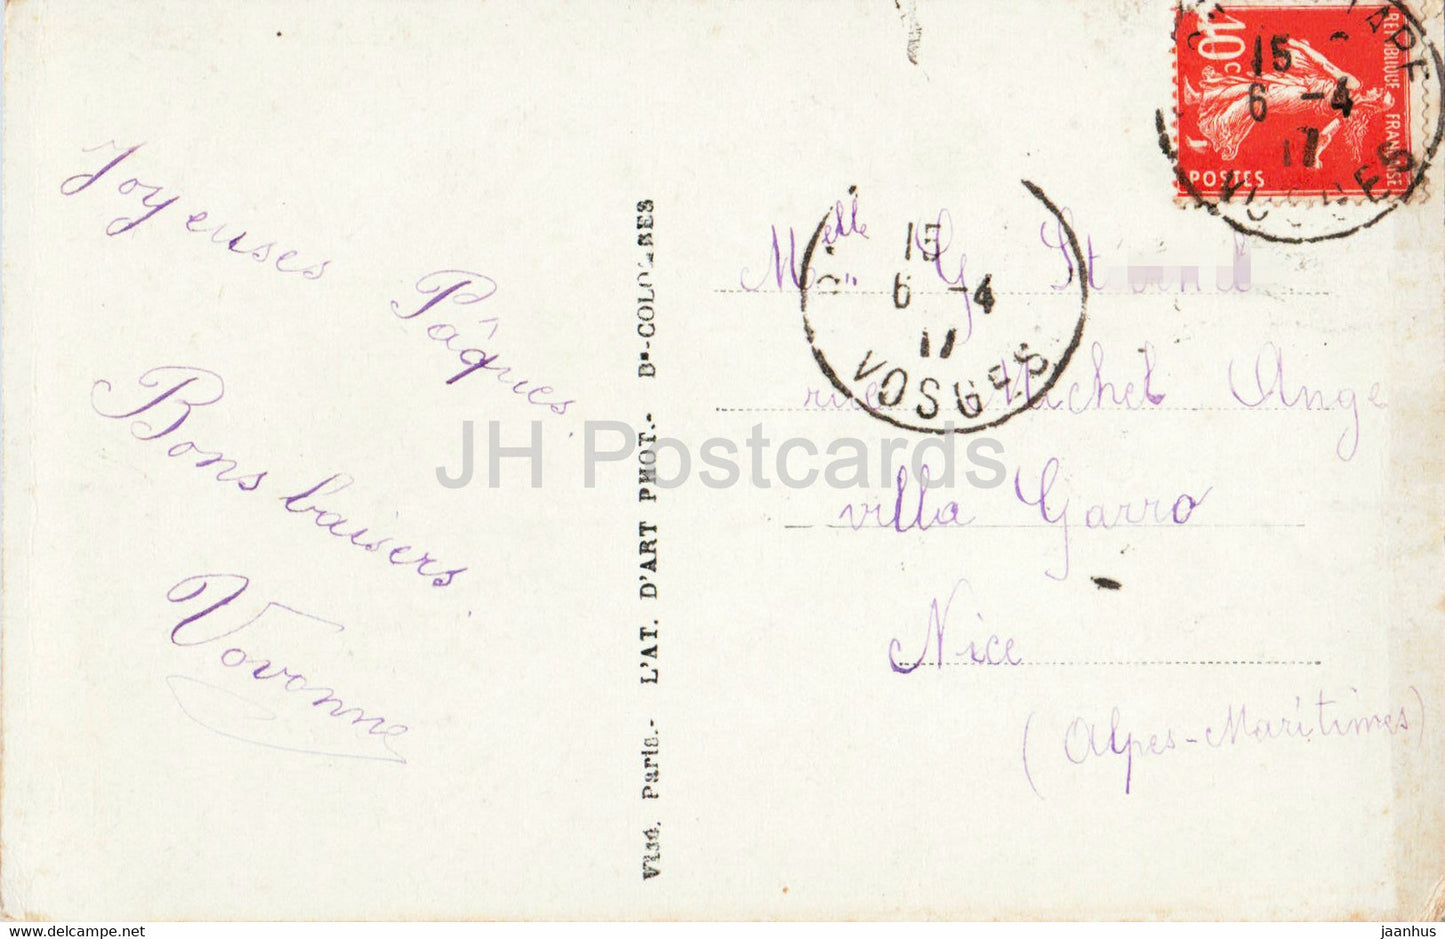 Ostergrußkarte – Les Fleurs et les souhaits – Mädchen – Furia – 1810 – alte Postkarte – 1917 – Frankreich – gebraucht